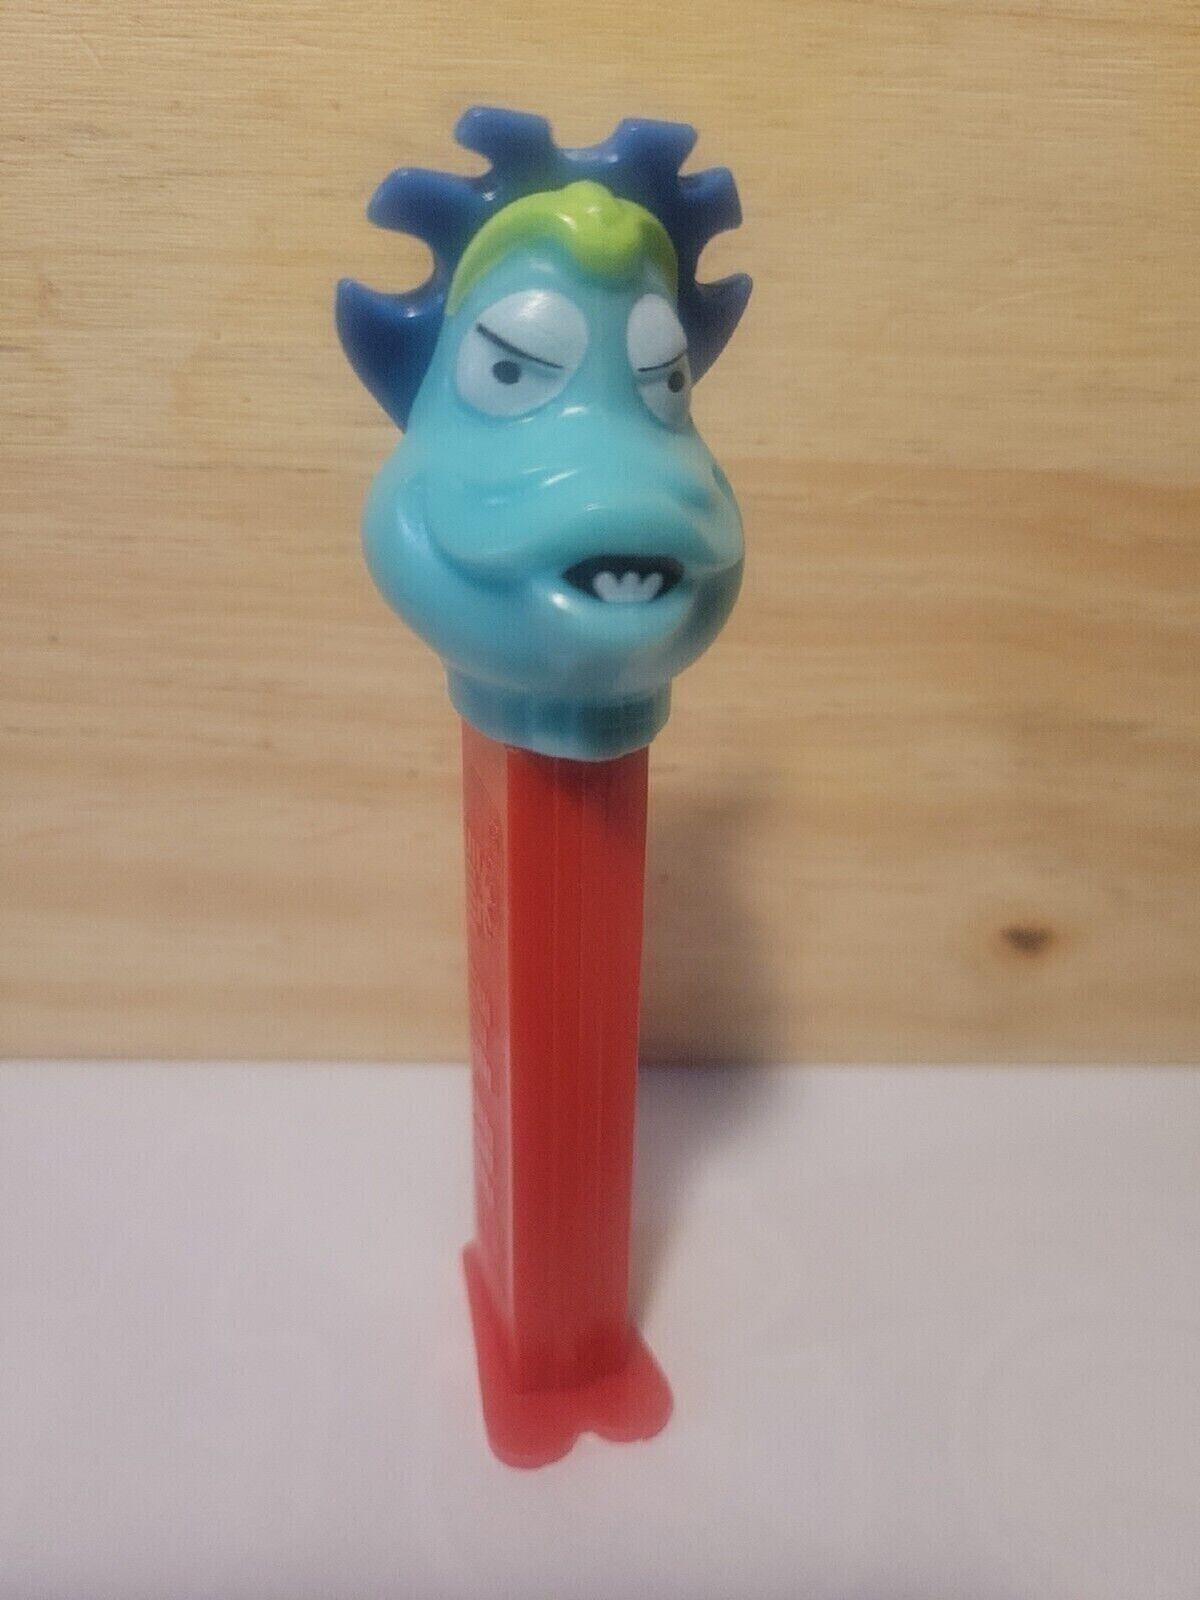 Monster Pez Candy Dispenser Collectible - Slovenia 1993 - $6.19